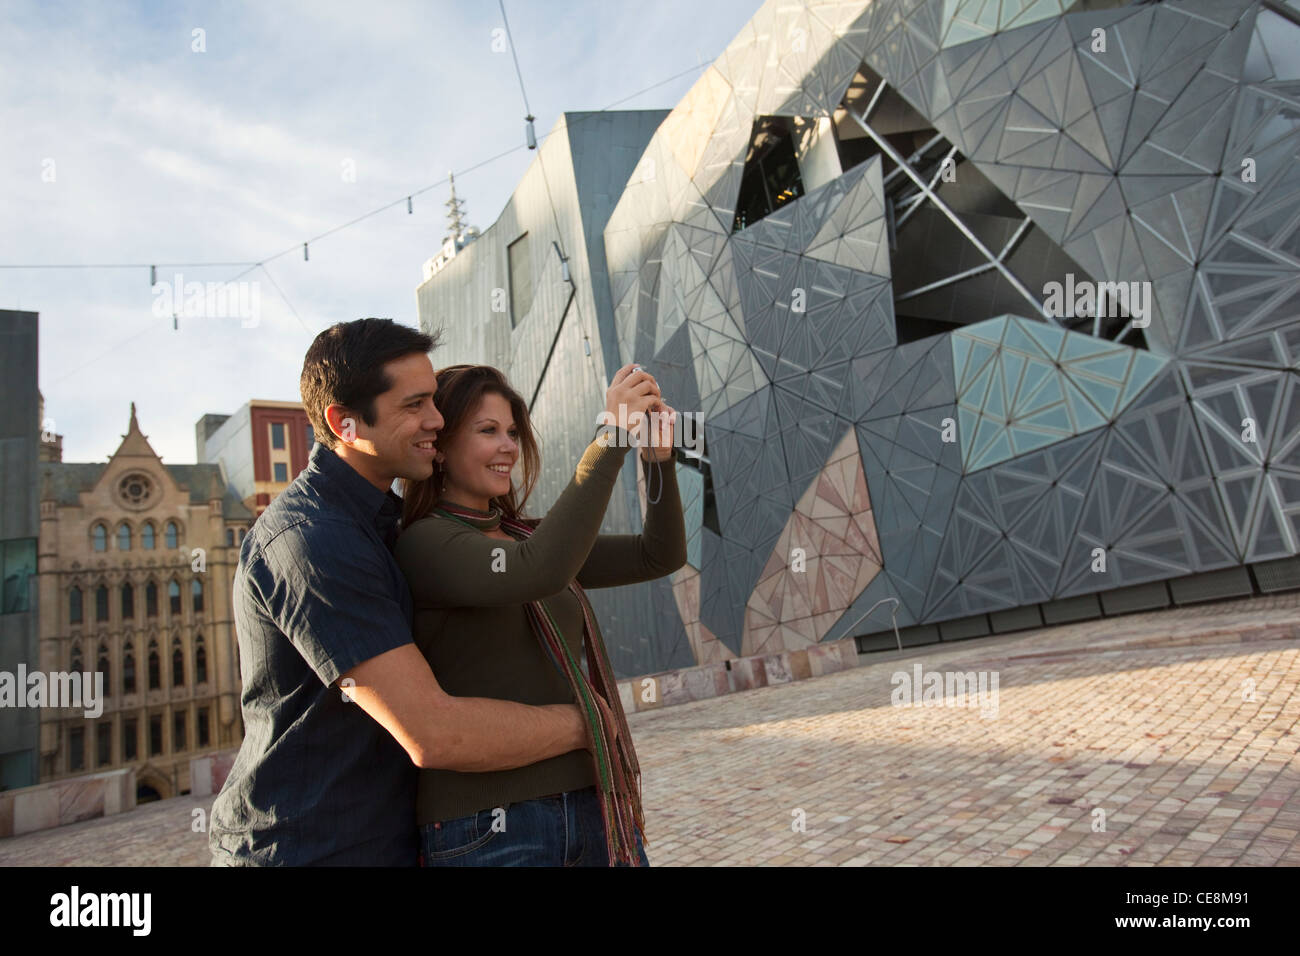 Paio di visite turistiche in città, prendere una fotografia di Federation Square, Melbourne, Victoria, Australia Foto Stock